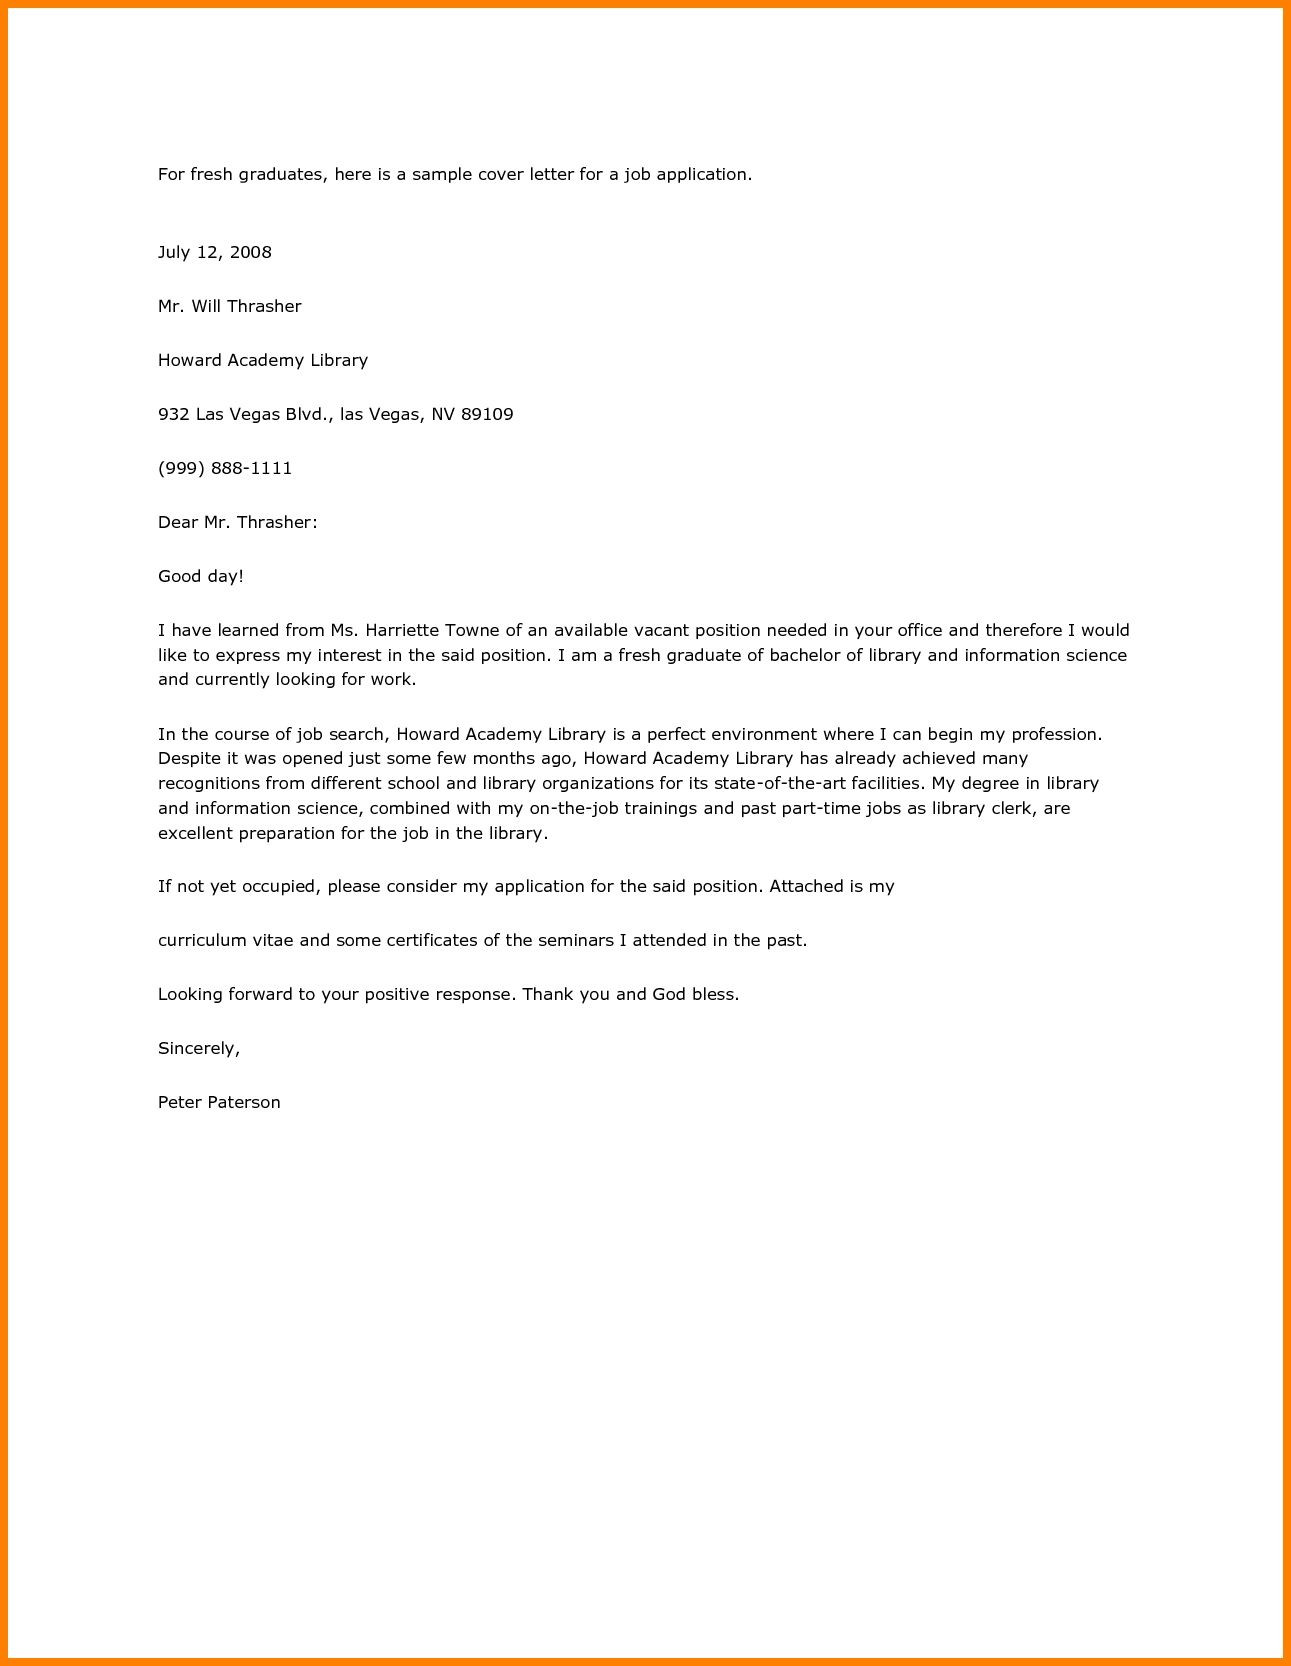 Sample Resume Letter for Job Application Pdf Application Letter Sle for Fresh Graduate Pdf Job Cover Letter …